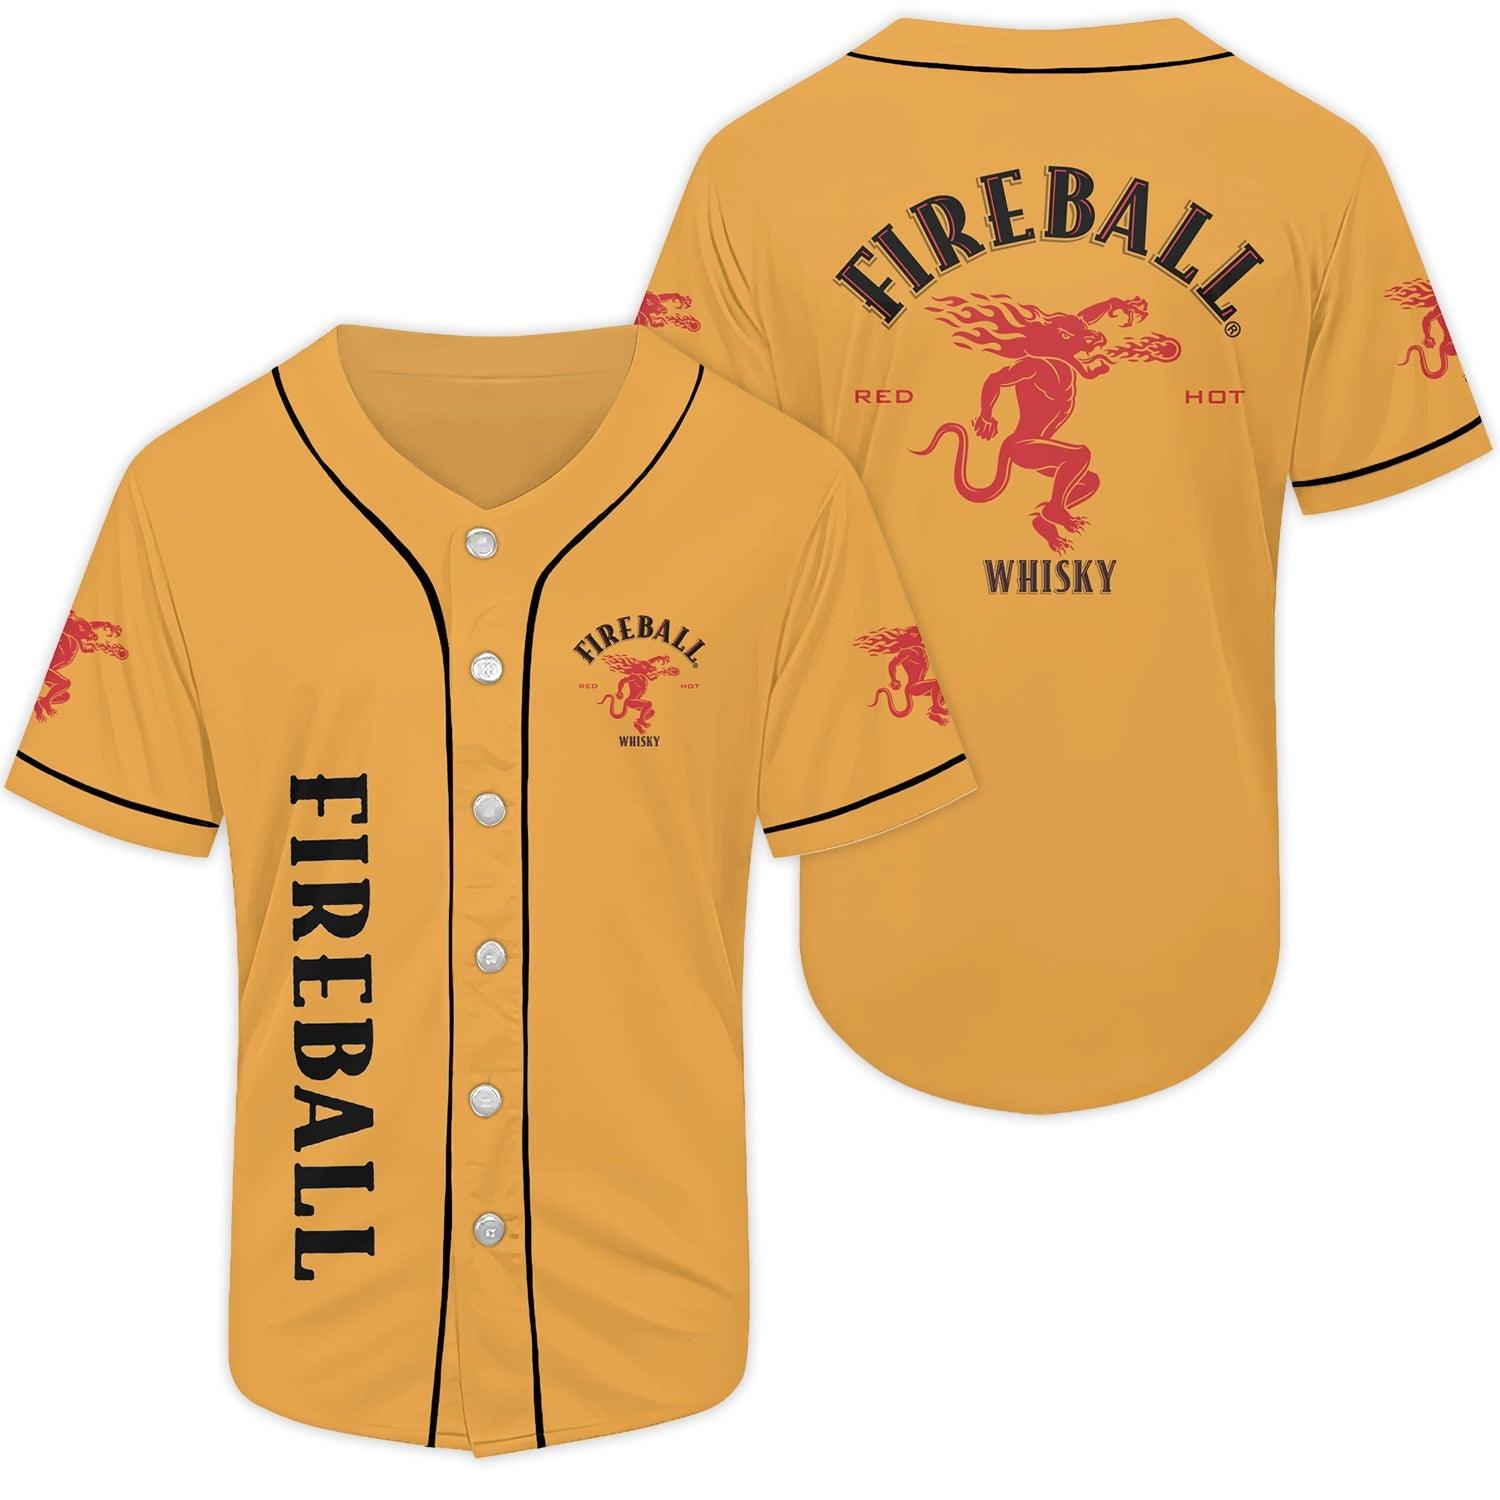 Basic Fireball Whiskey Baseball Jersey